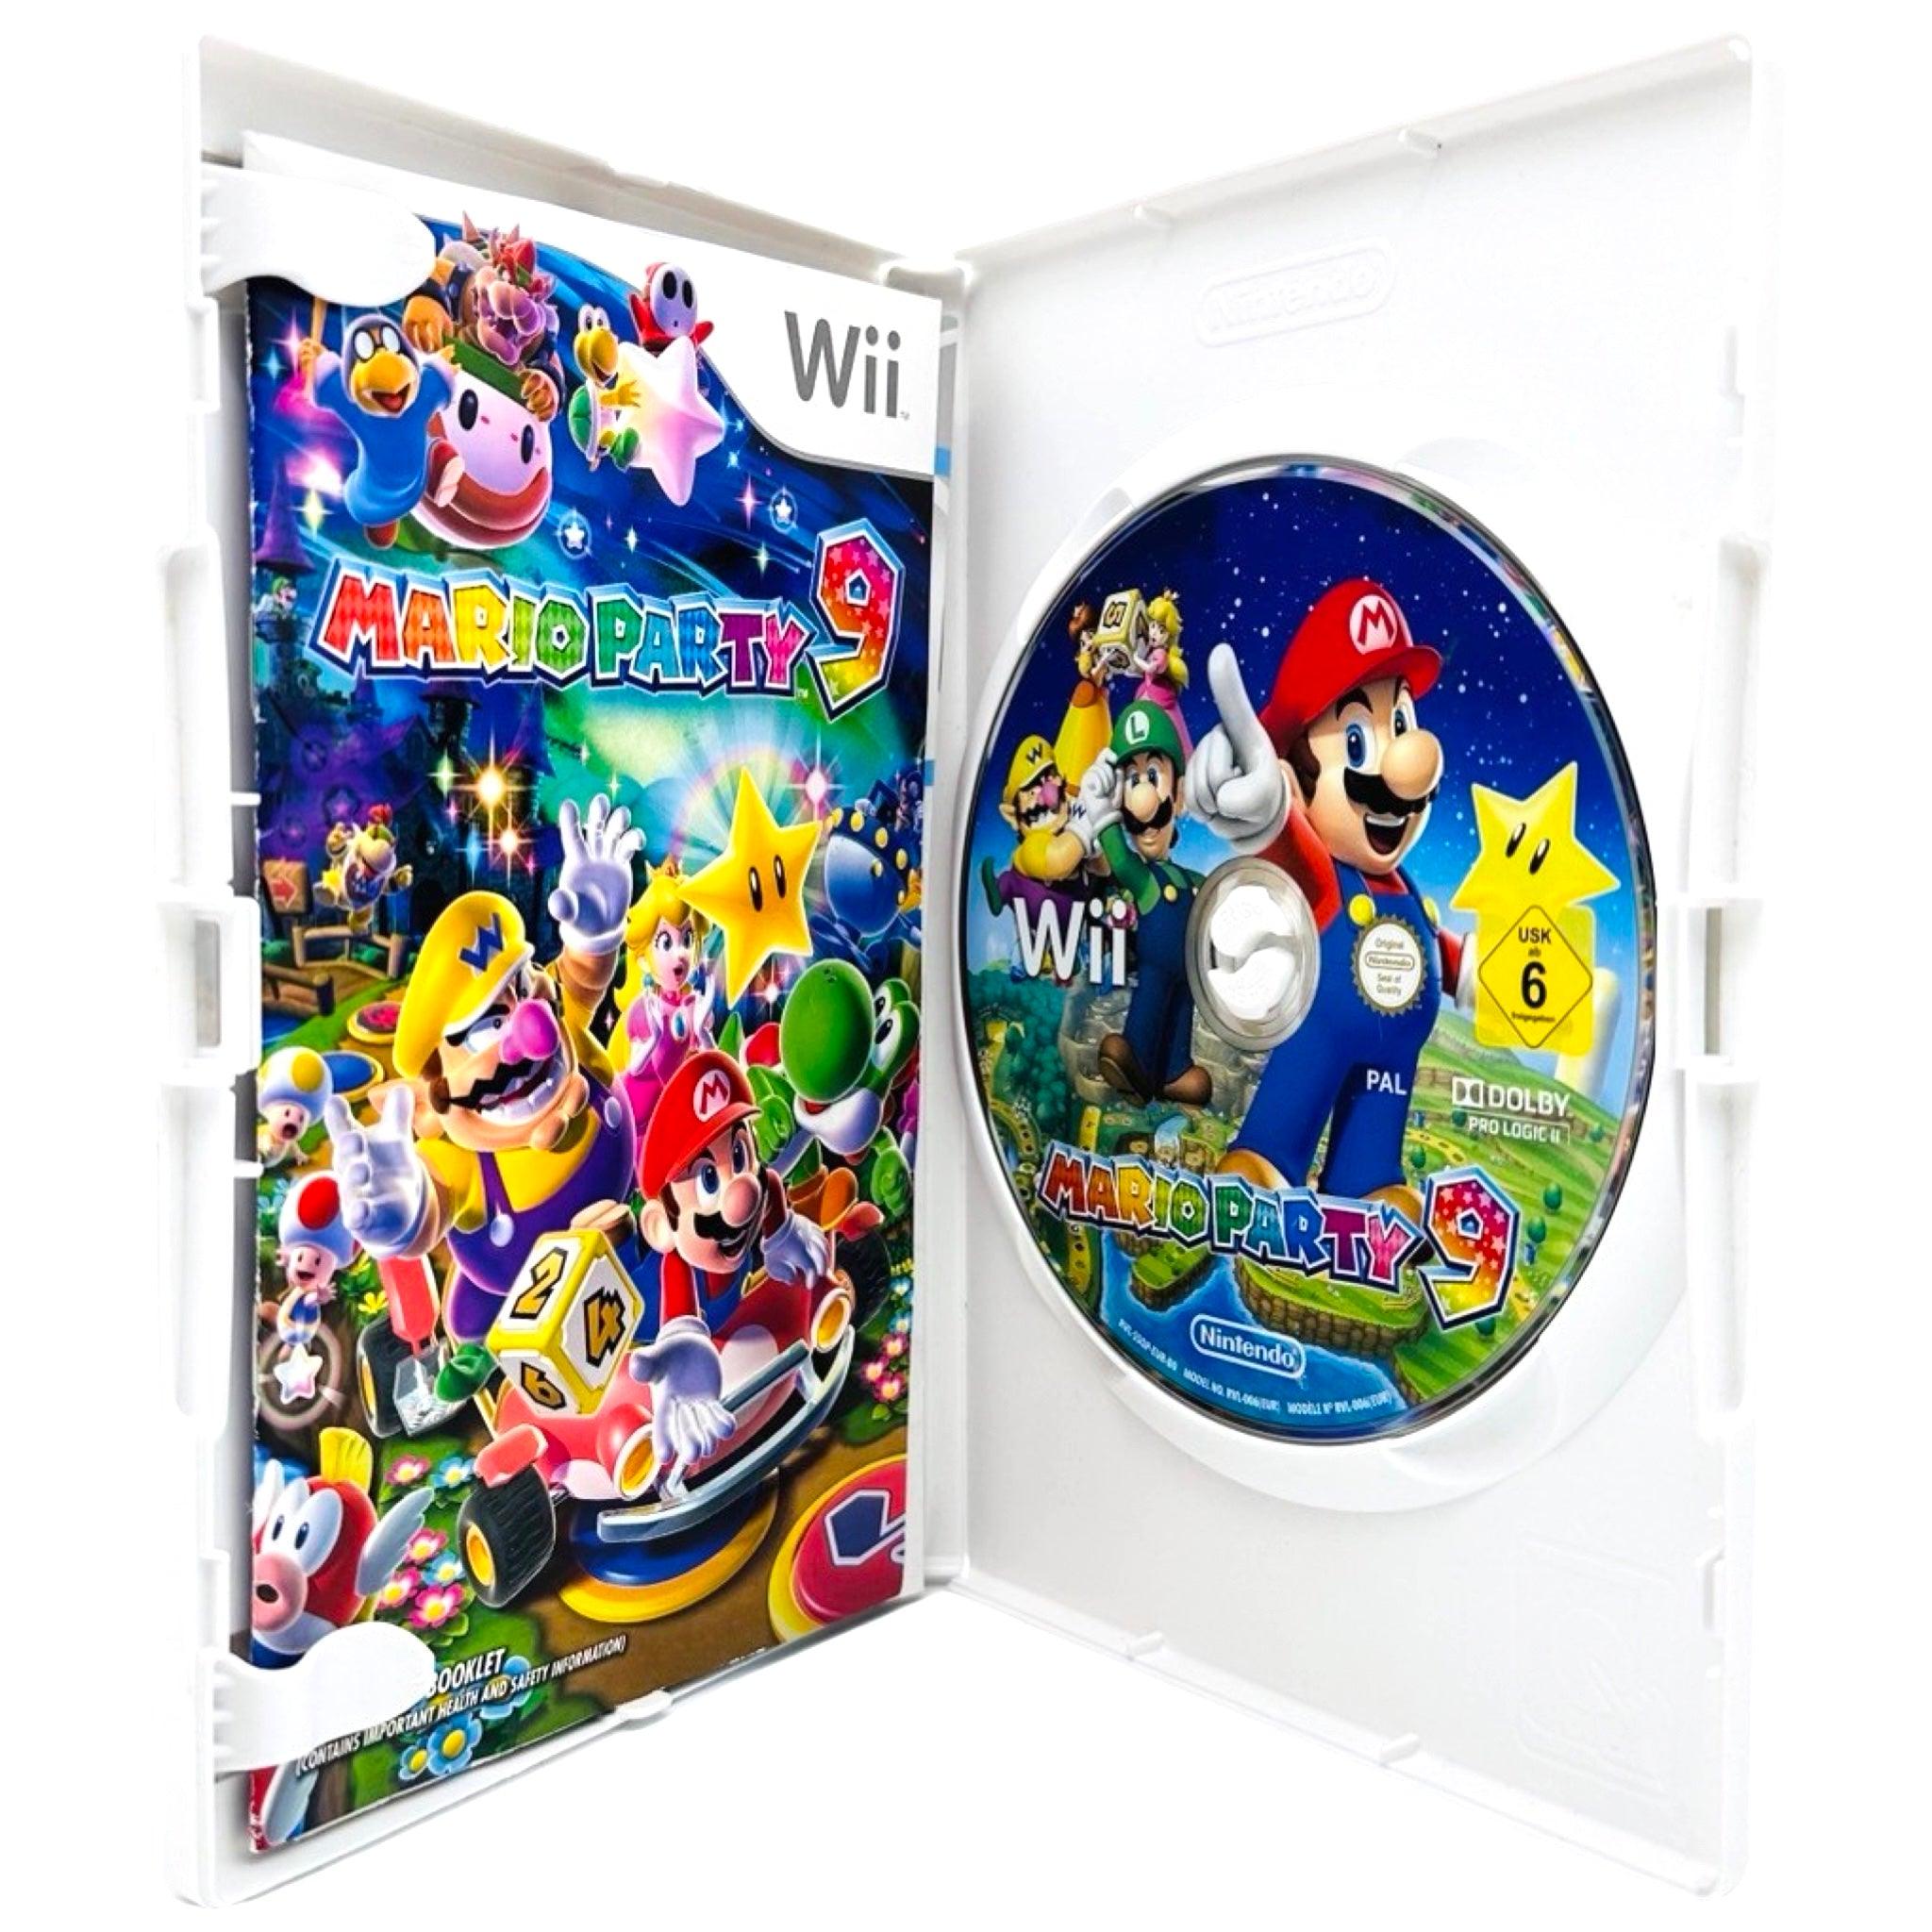 Wii: Mario Party 9 - RetroGaming.no